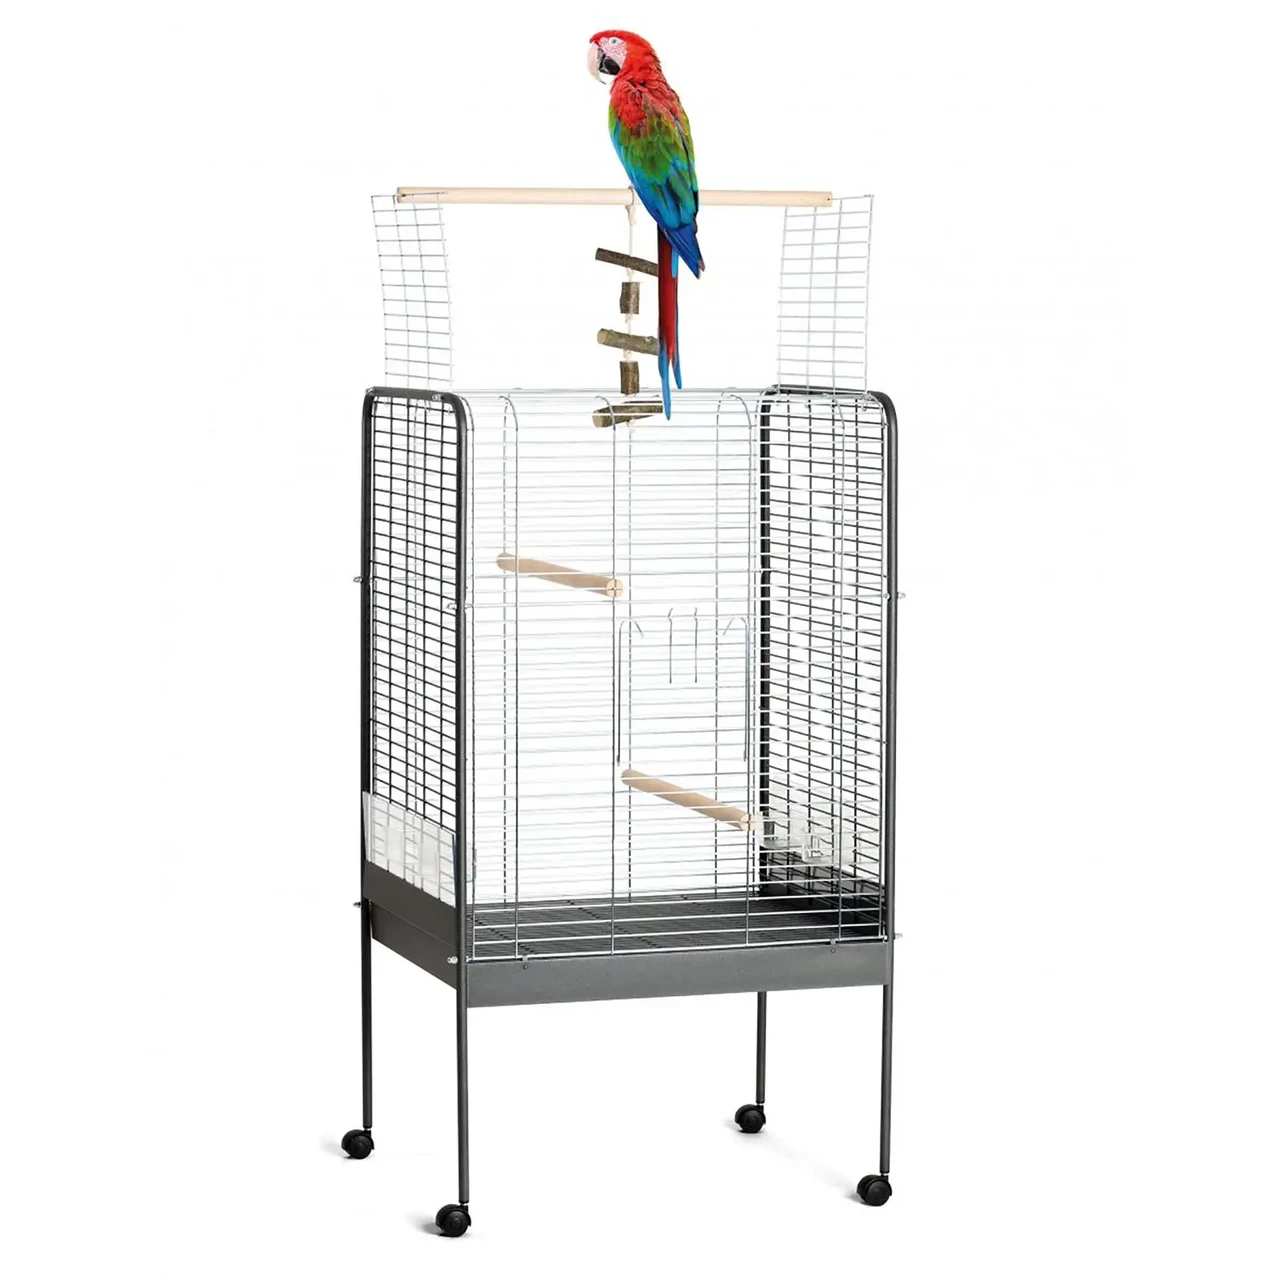 Как устроить идеальный вольер для канареек, попугаев и других пернатых питомцев дома